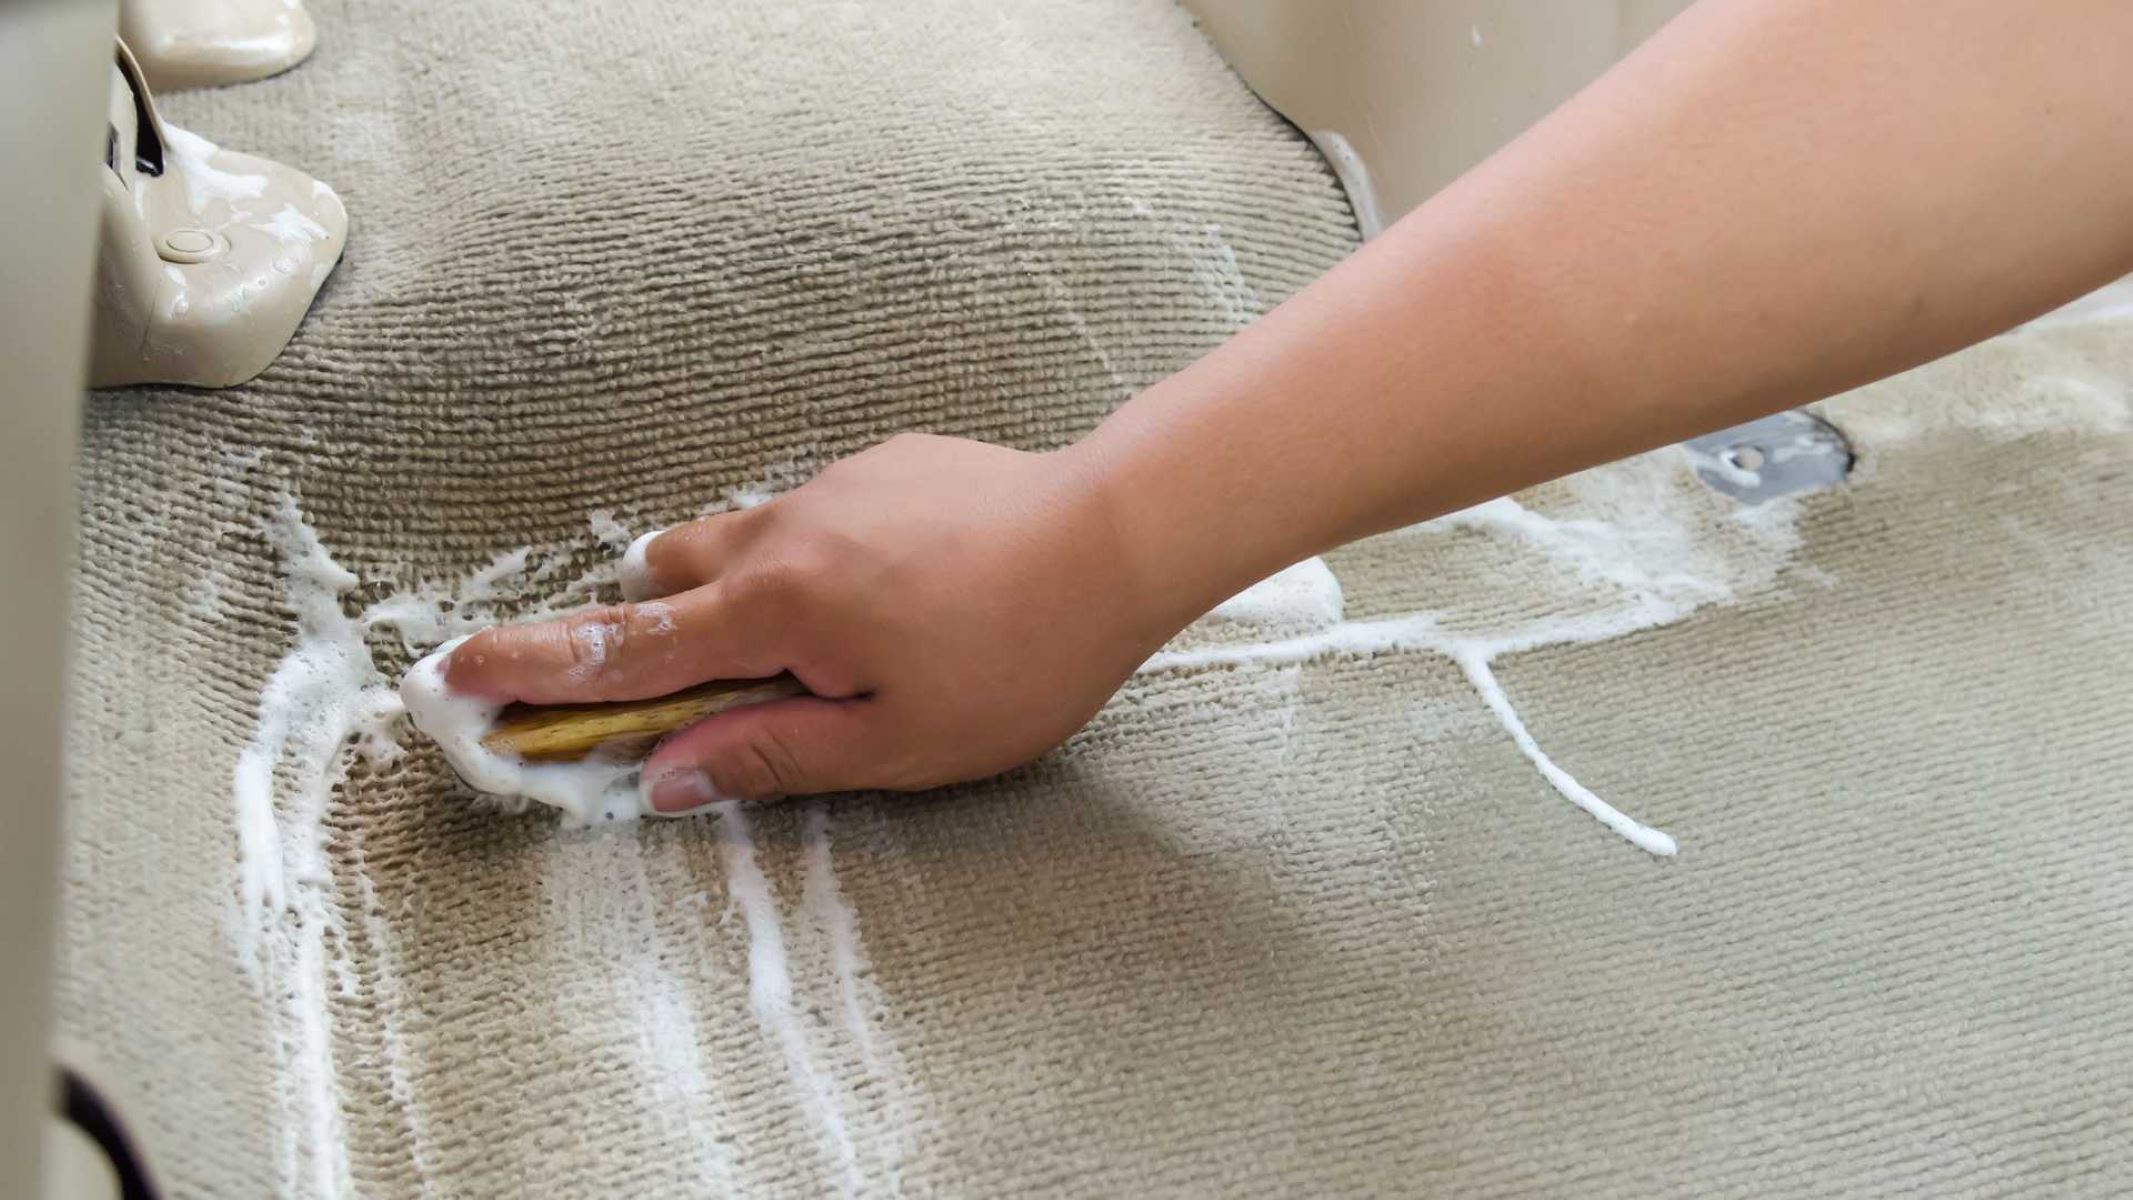 How To Clean Car Carpet